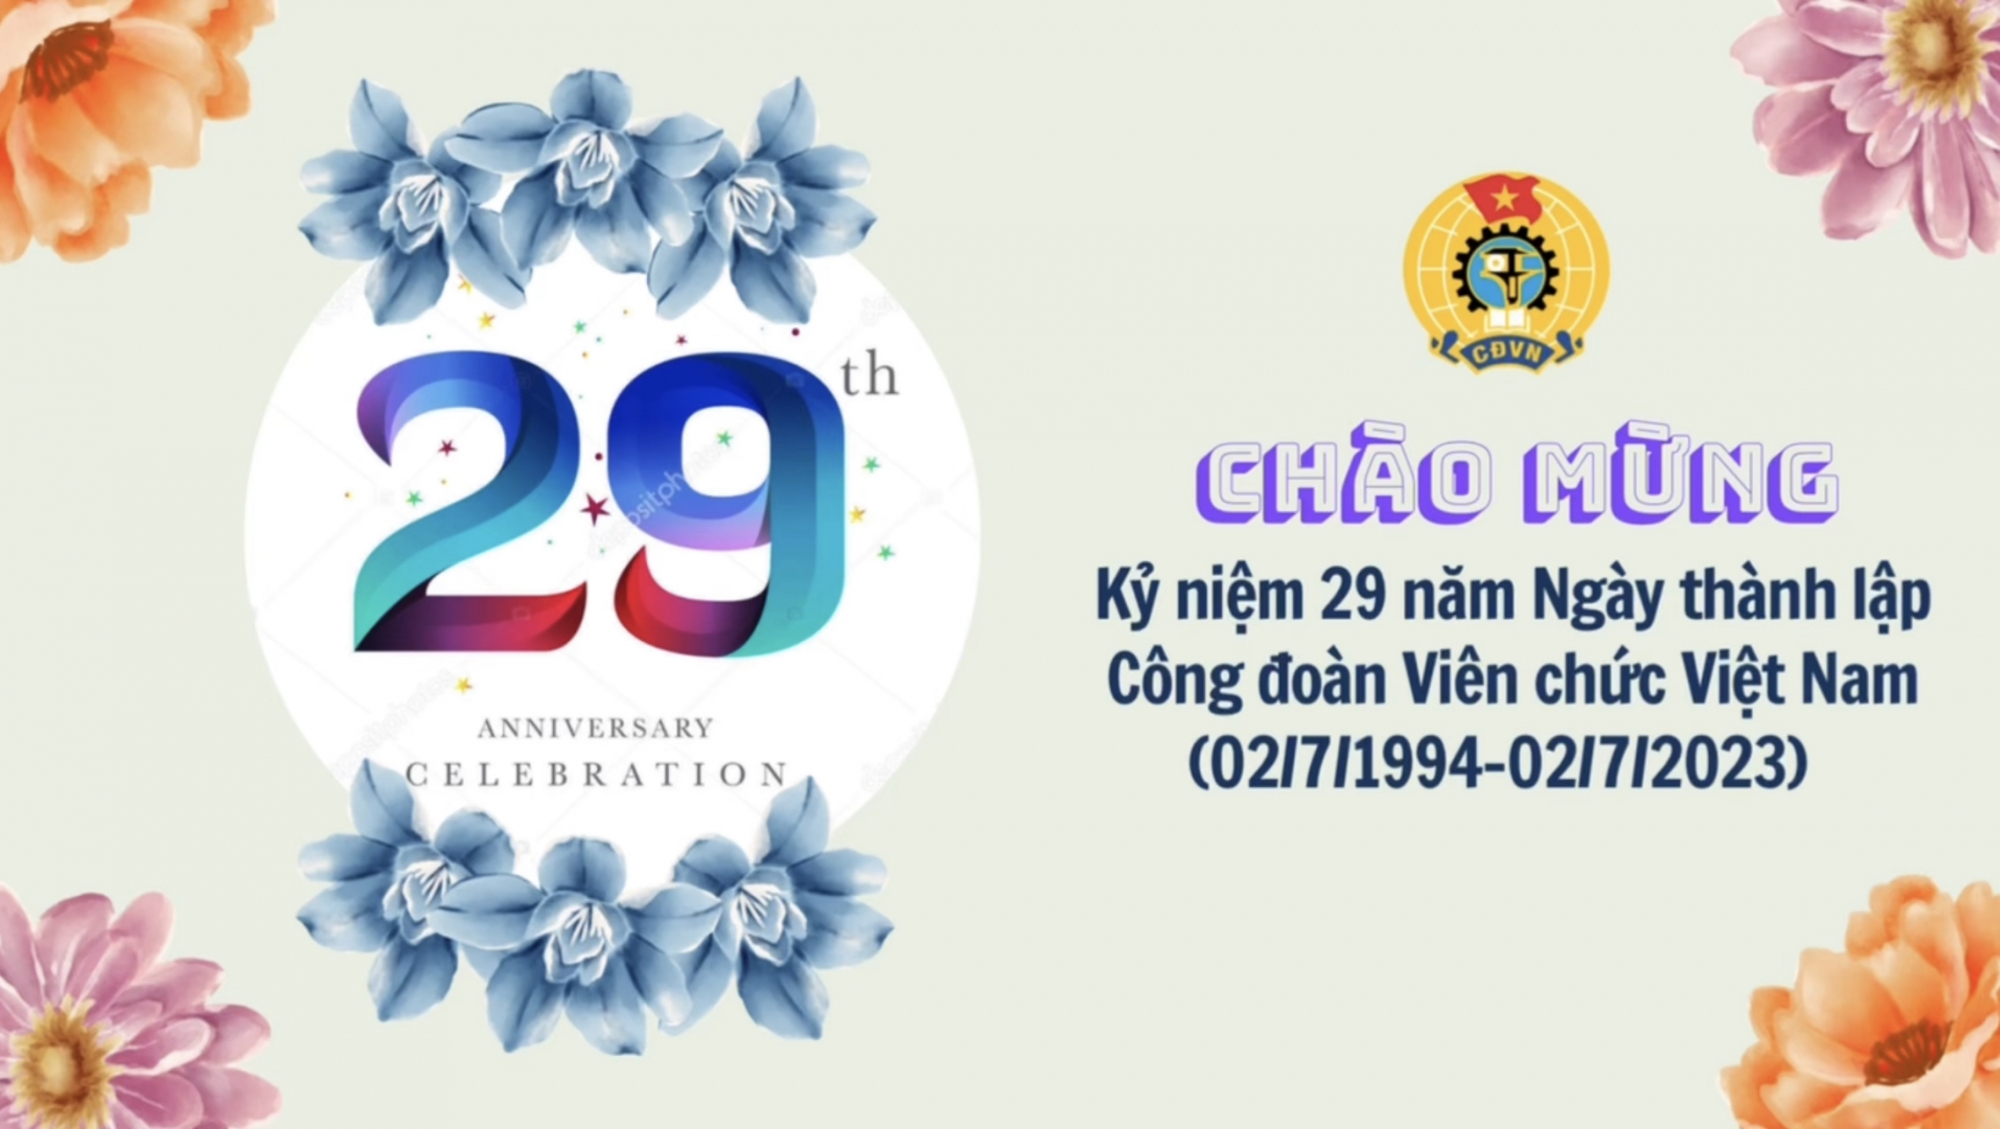 29 năm Ngày thành lập Công đoàn Viên chức Việt Nam (02/7/1994 - 02/7/2023)